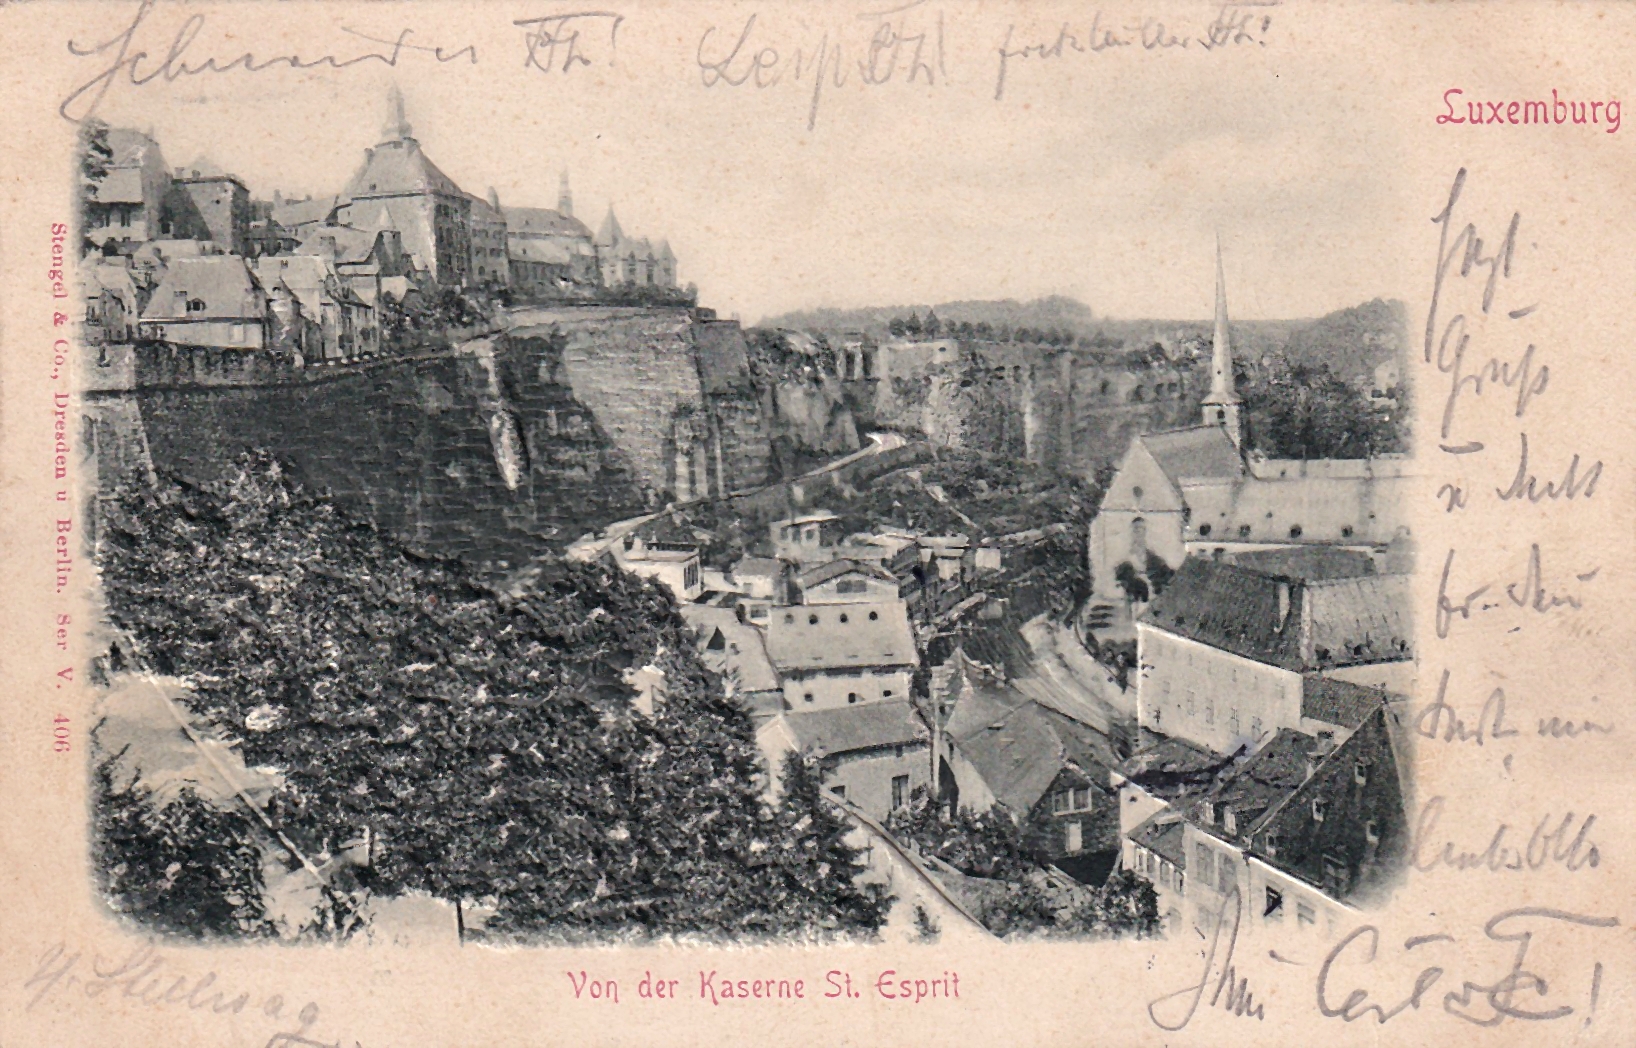 LUXEMBURG - Von der Kaserne St. Esprit - 22.07.1902